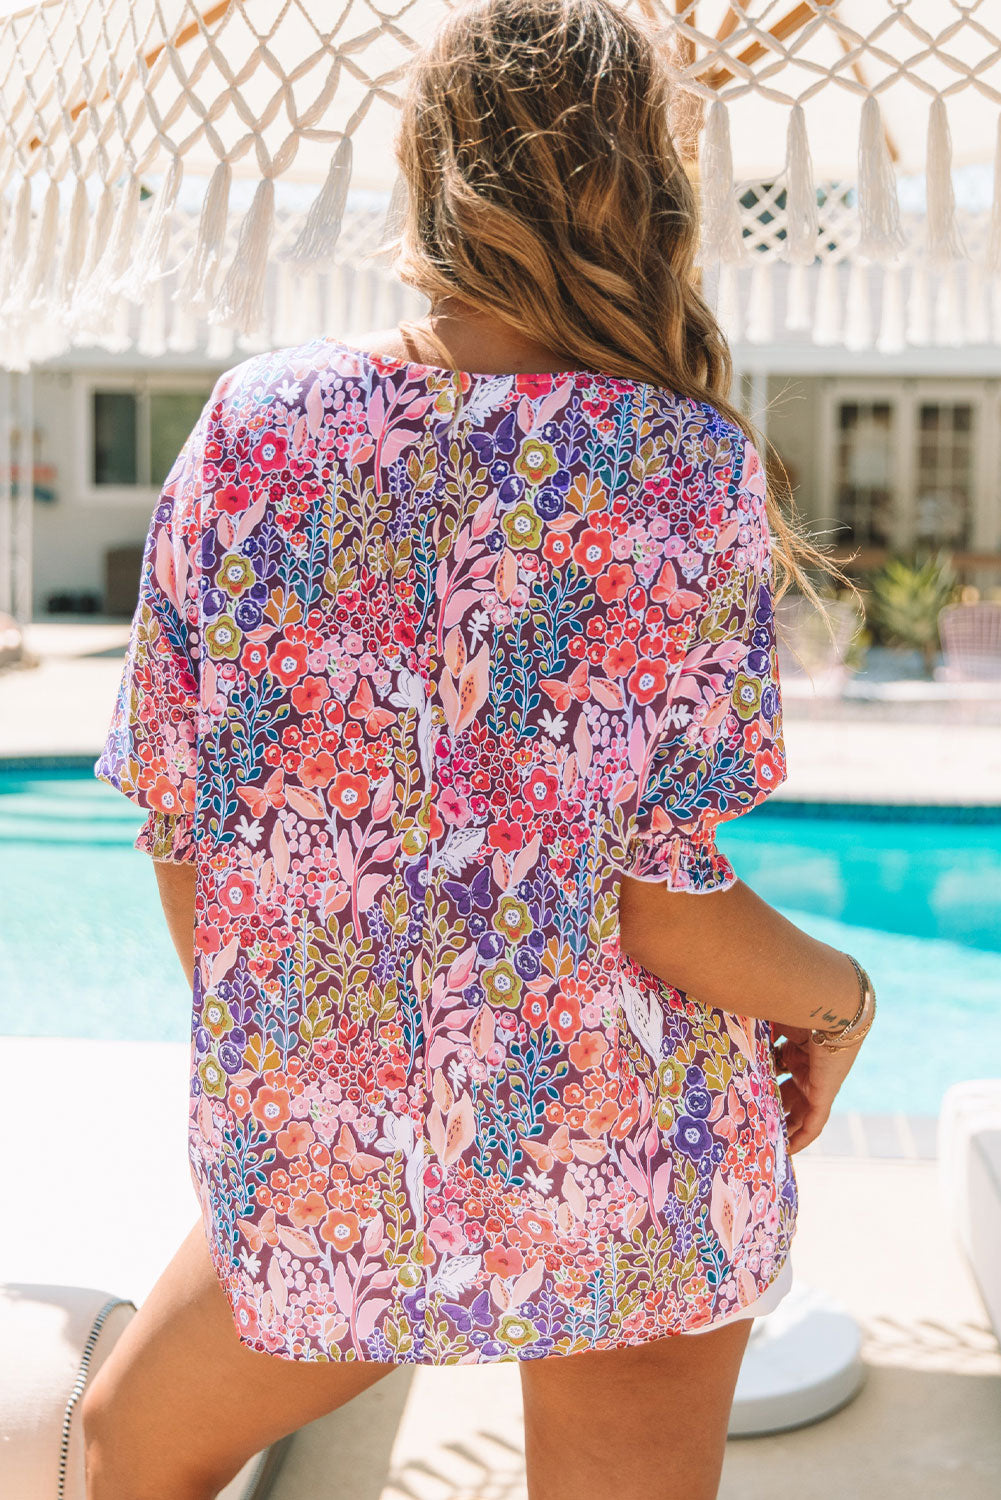 Geraffte Tunika-Bluse mit mehrfarbigen Blumenmuster und 3/4-Ärmeln